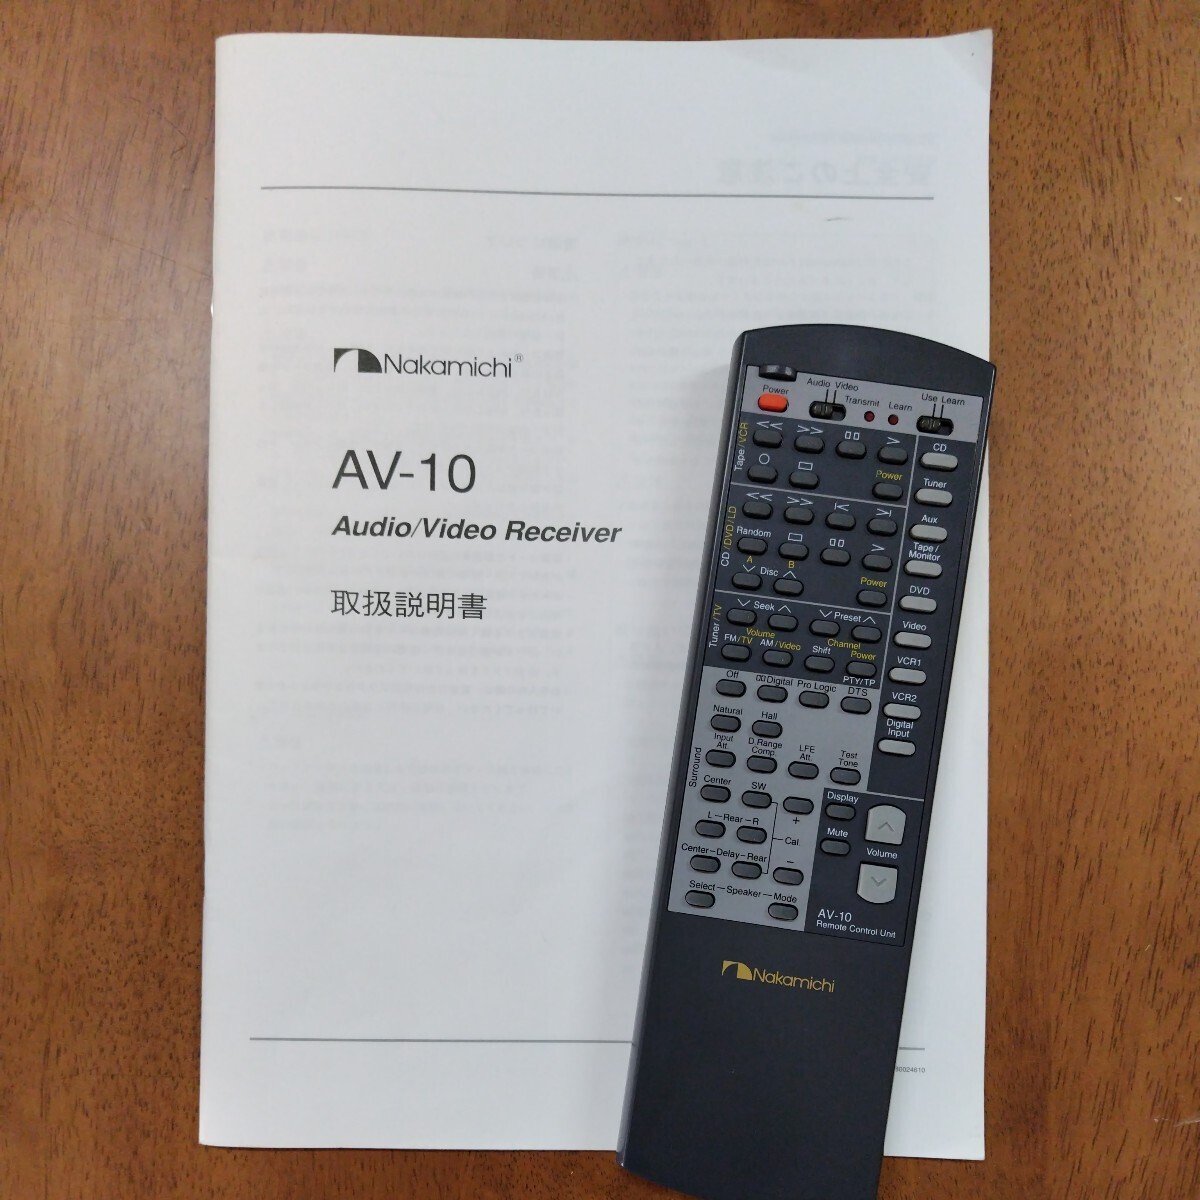  Junk AV amplifier Nakamichi AV-10 remote control, instructions equipped 